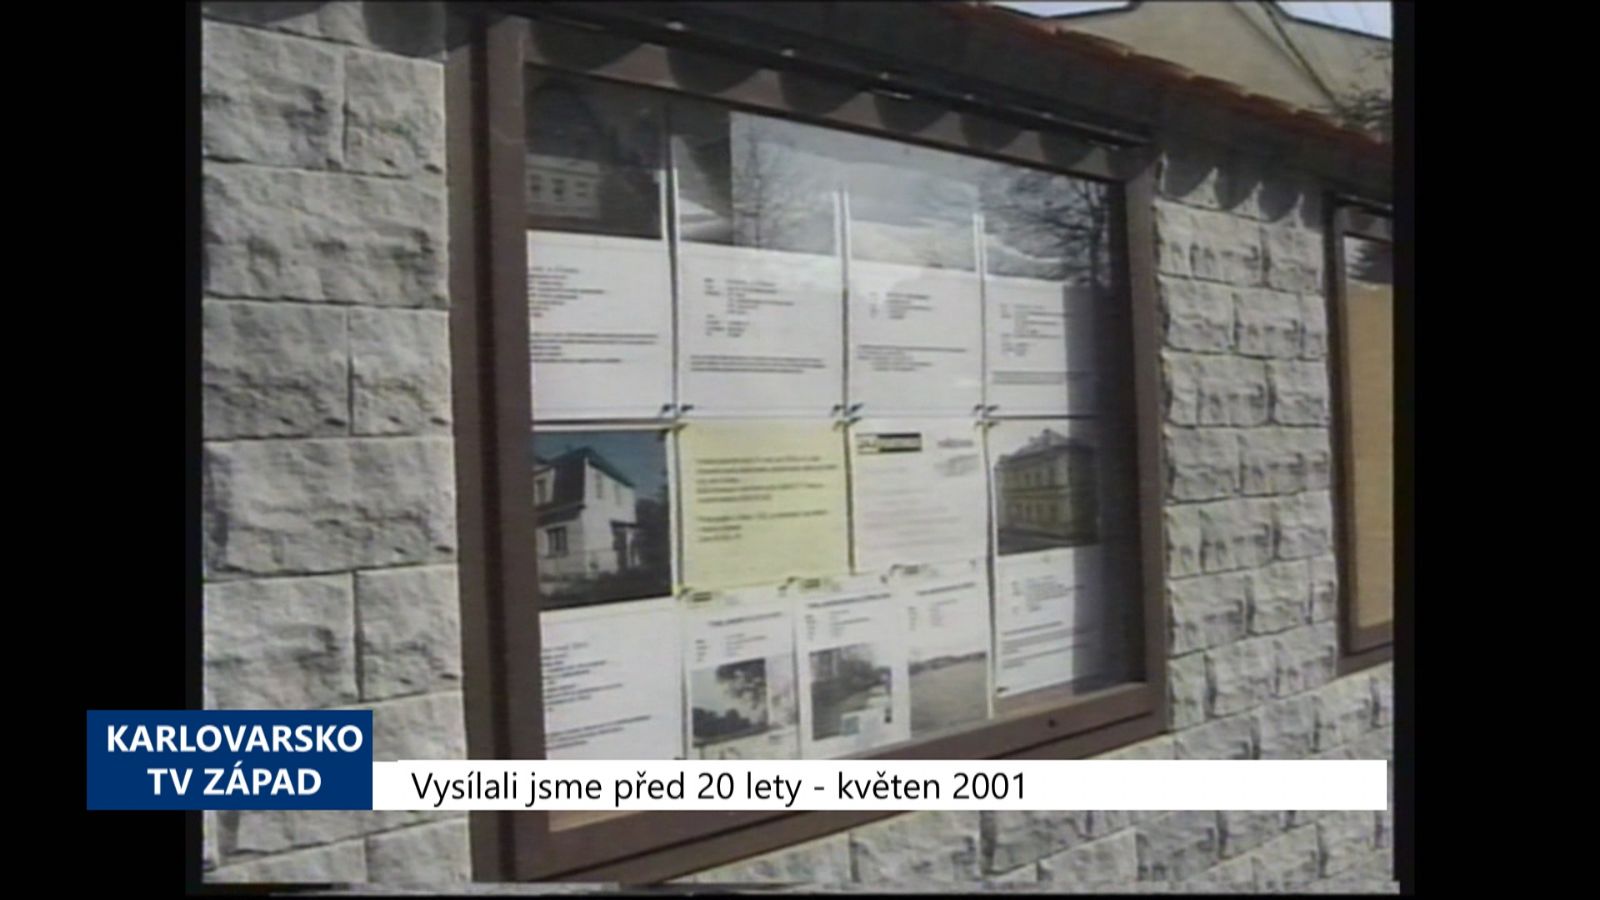 2001 – Cheb: Zisk z prodeje bytů by měl být přibližně 200 milionů (TV Západ)